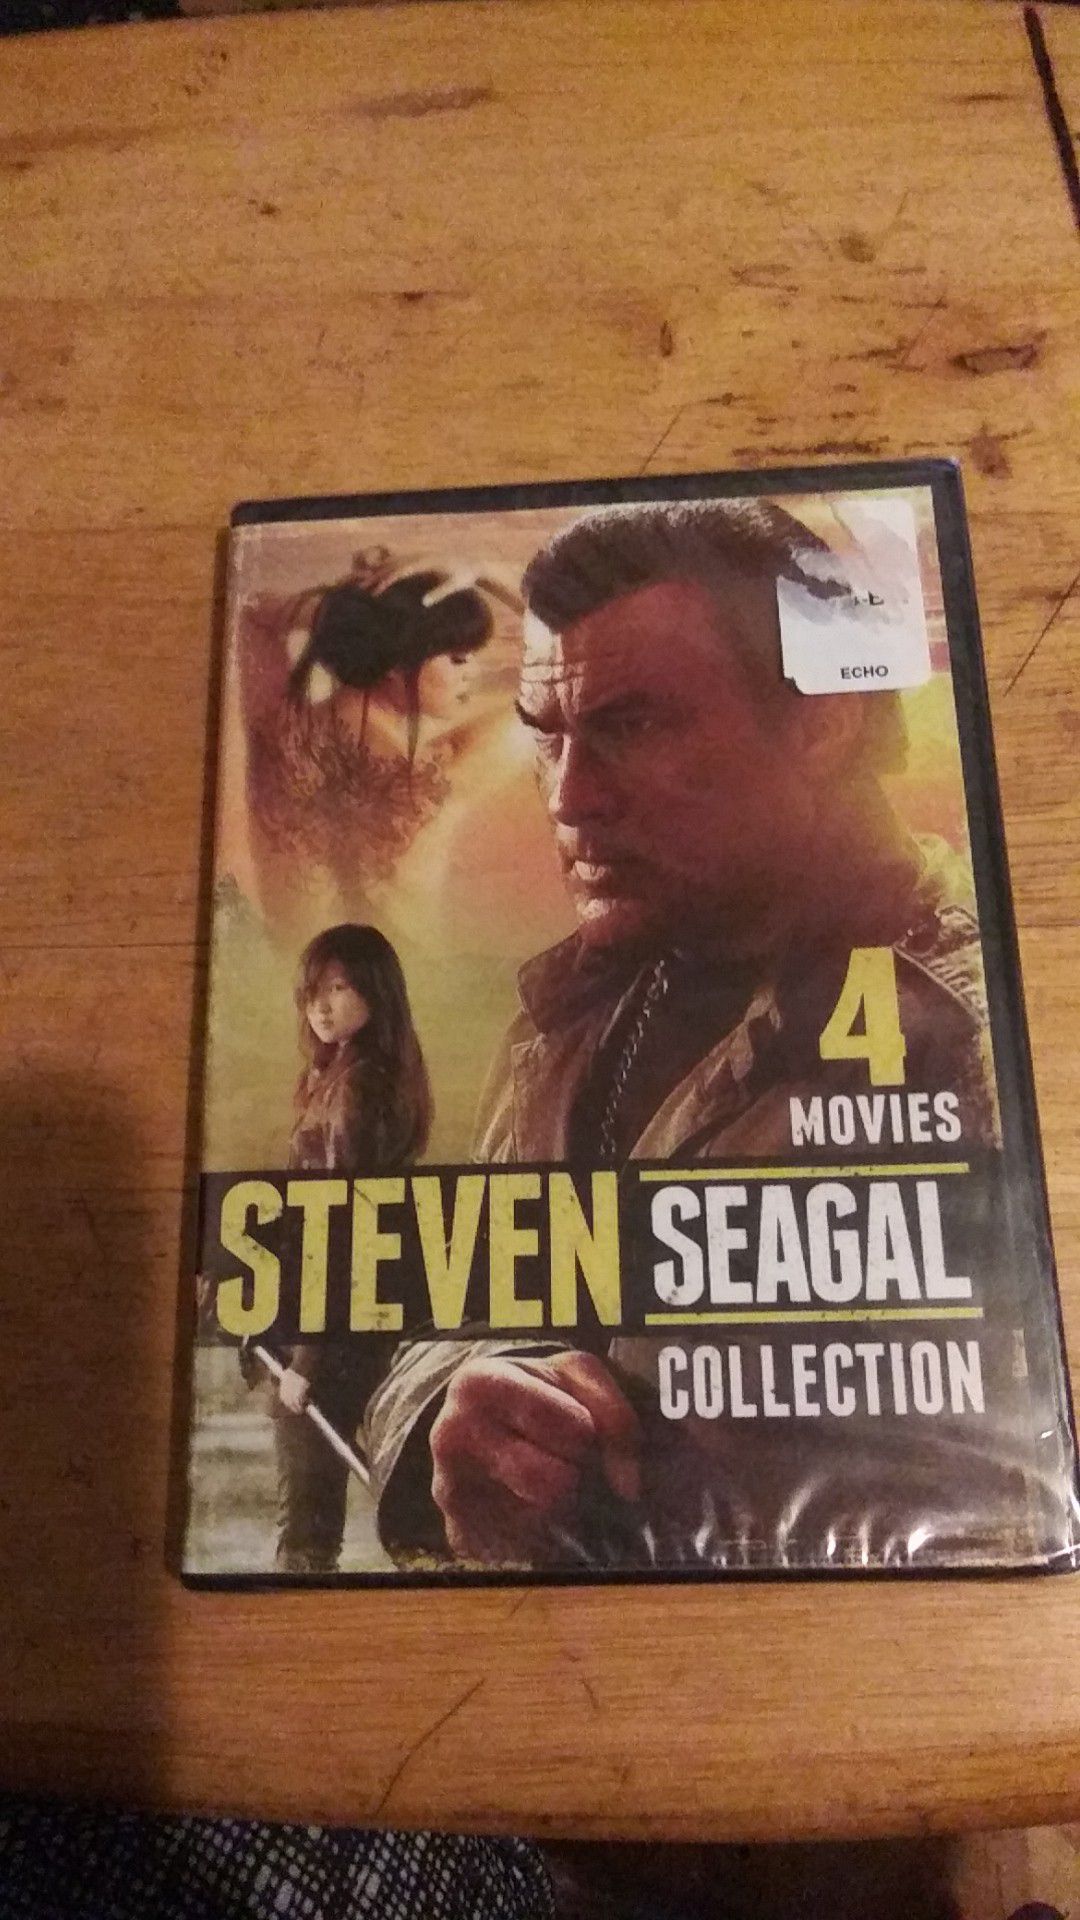 A Steven Seagal movie